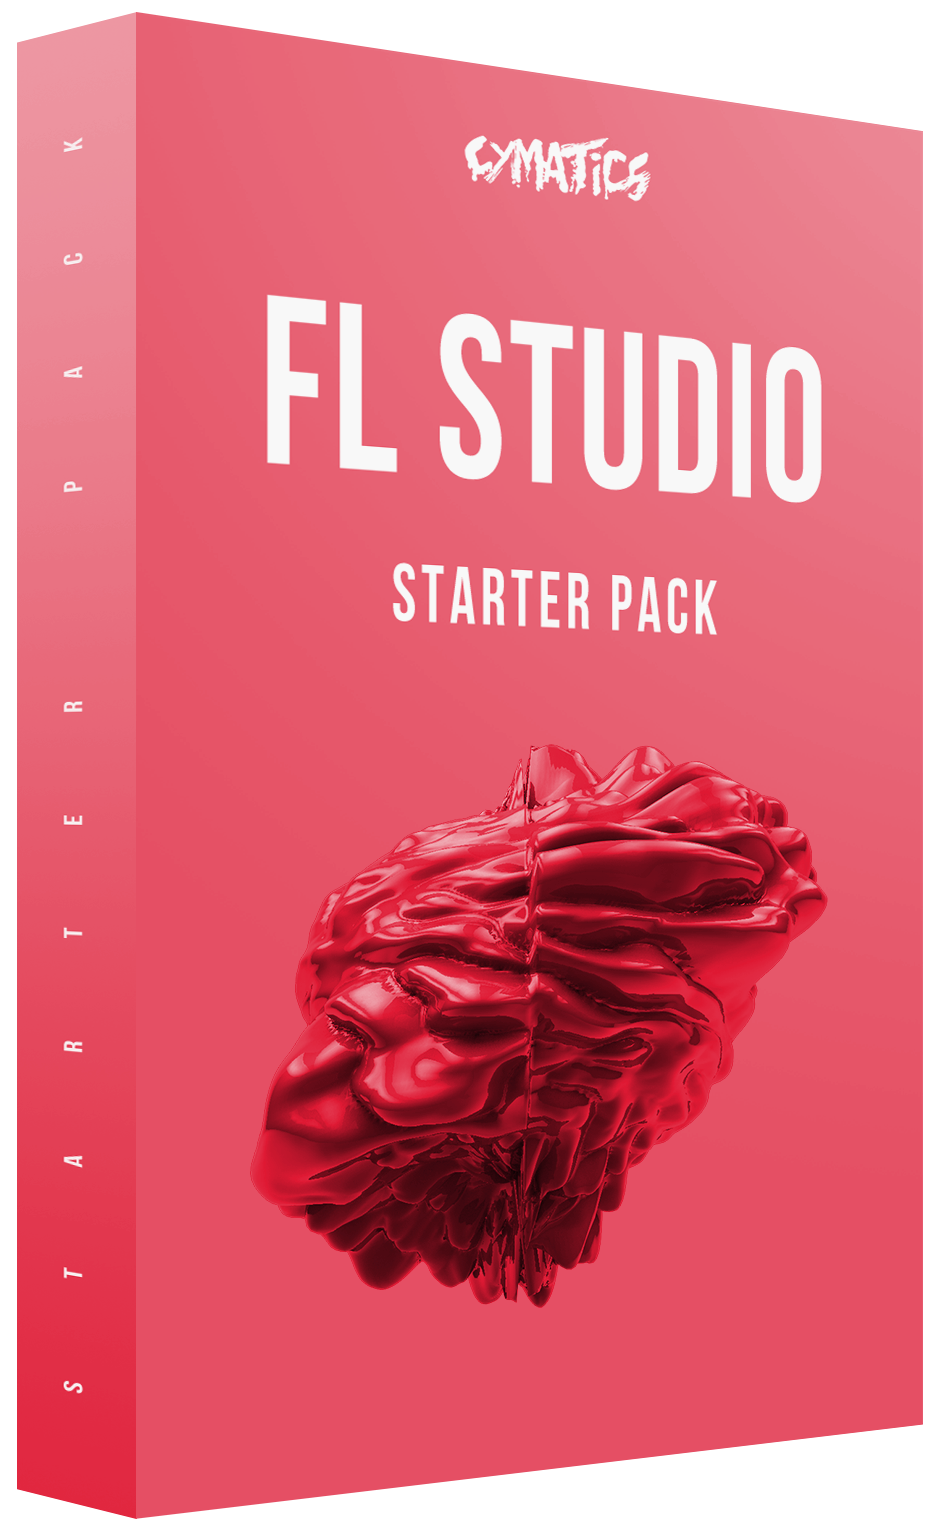 FL Studio Samples